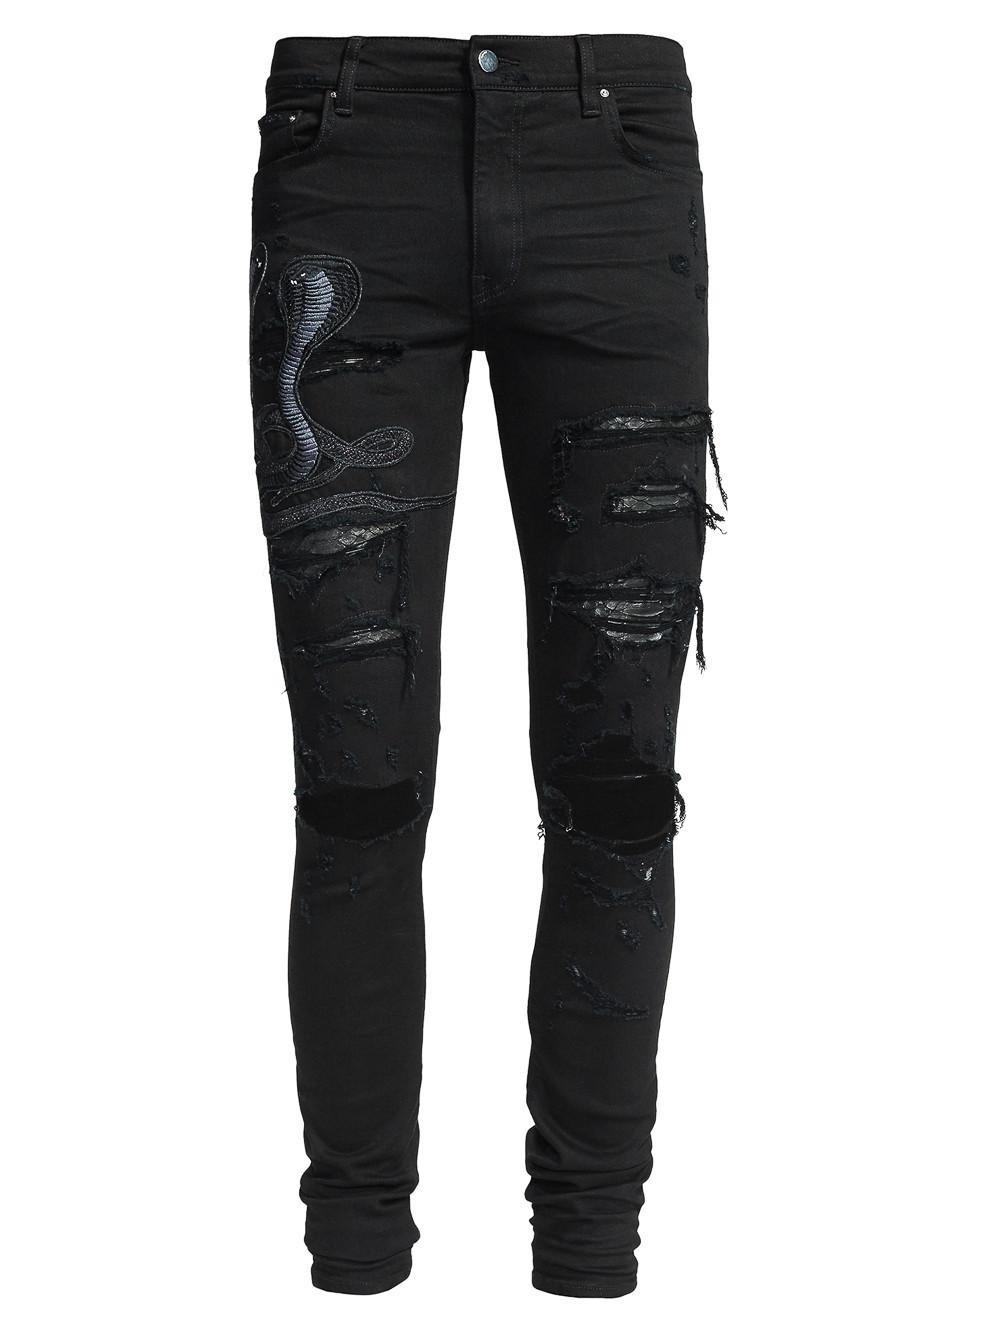 Amiri Denim Snake Detail Jeans in Black for Men - Lyst